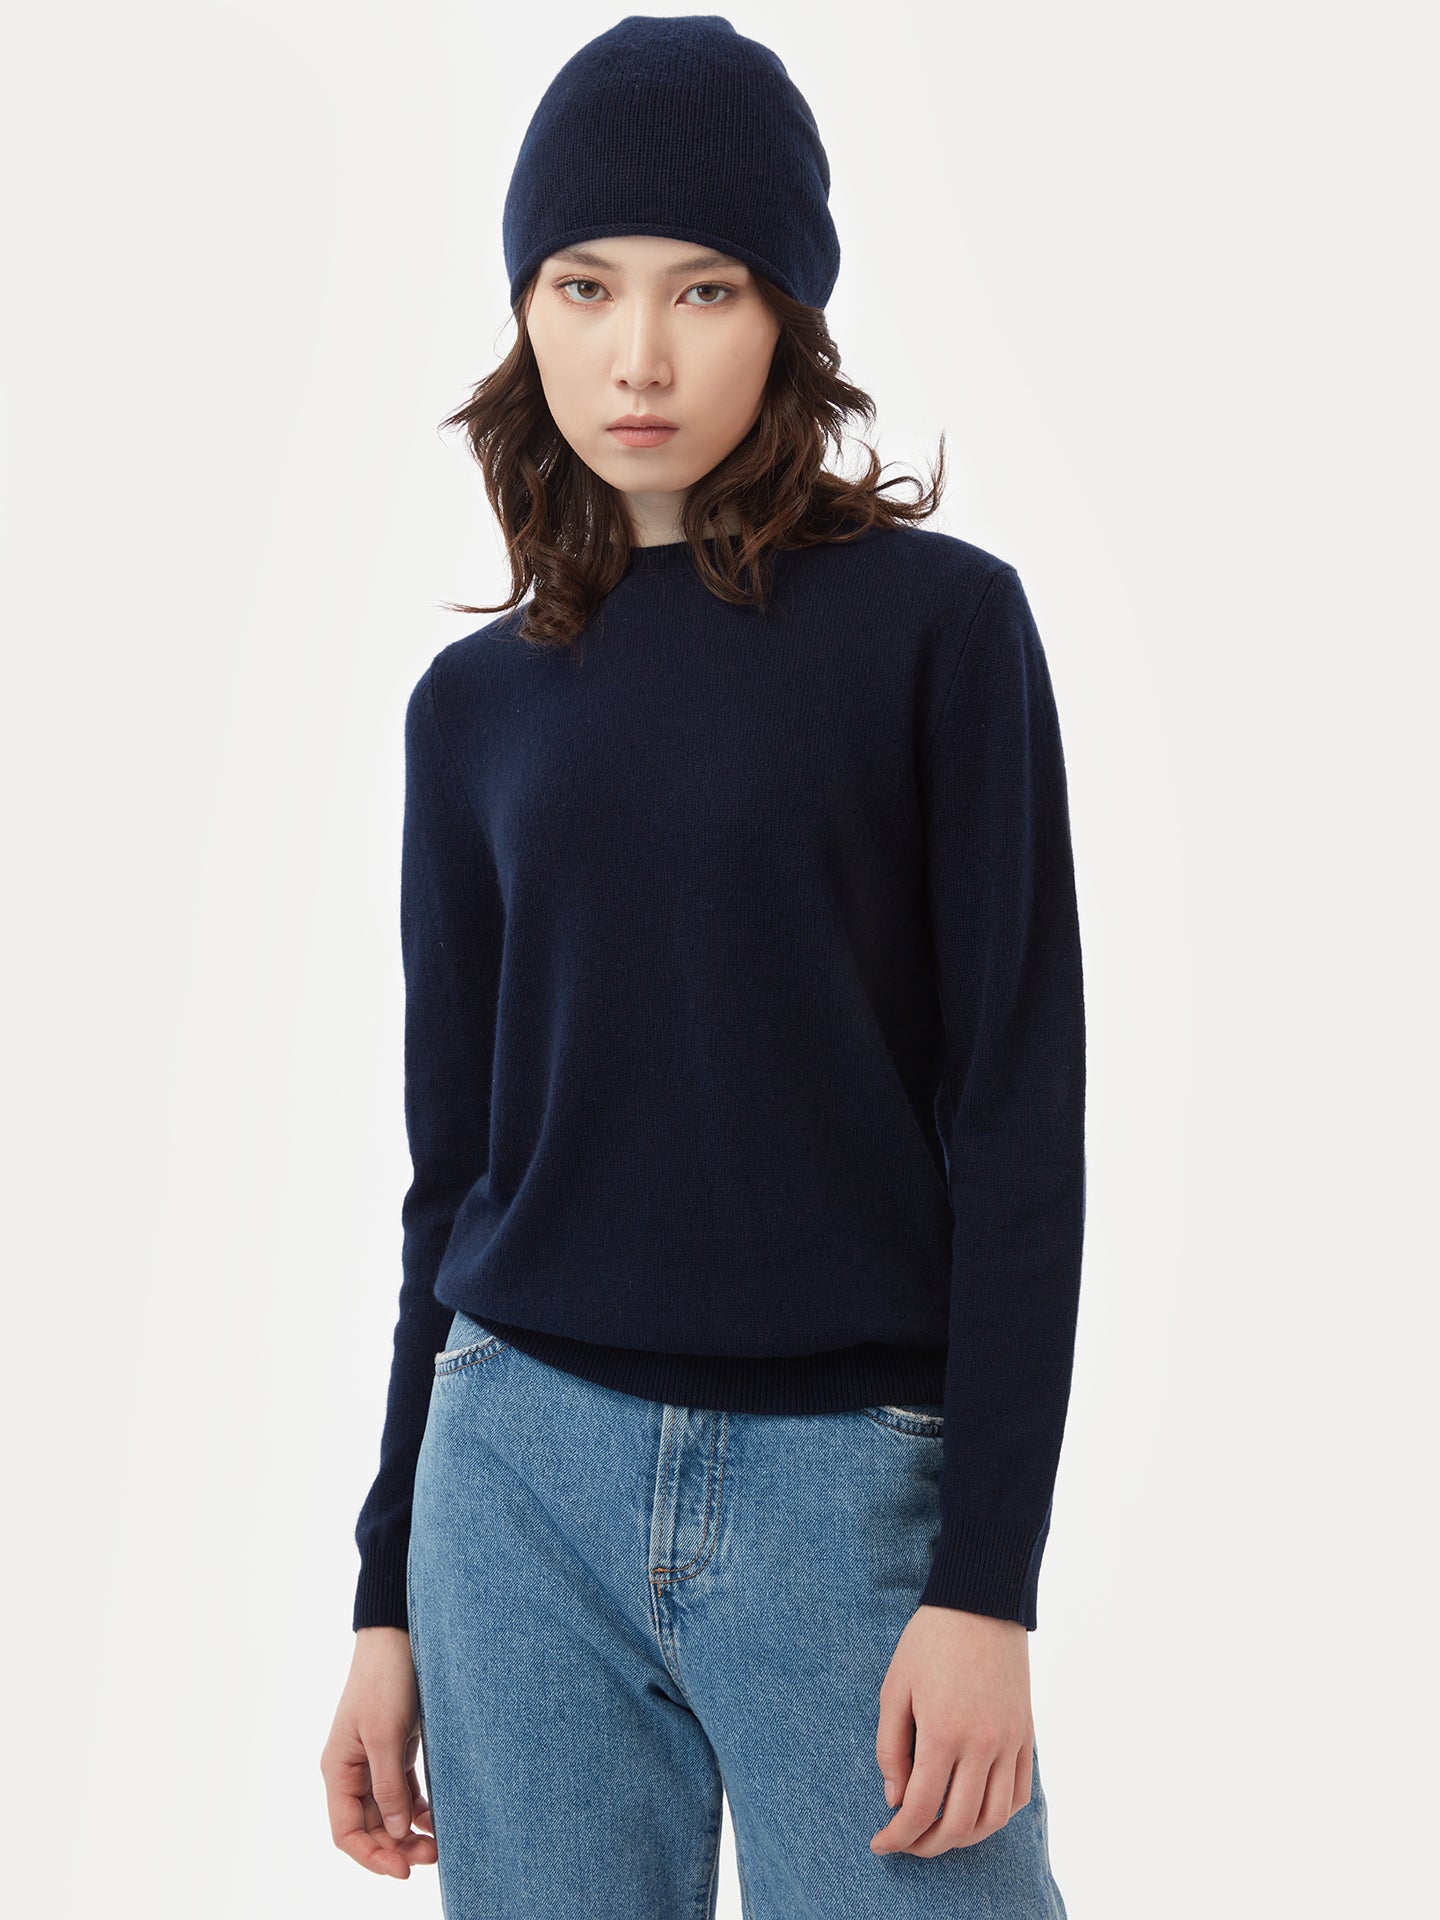 Women's Cashmere Hat & Sweater Set Navy - Gobi Cashmere